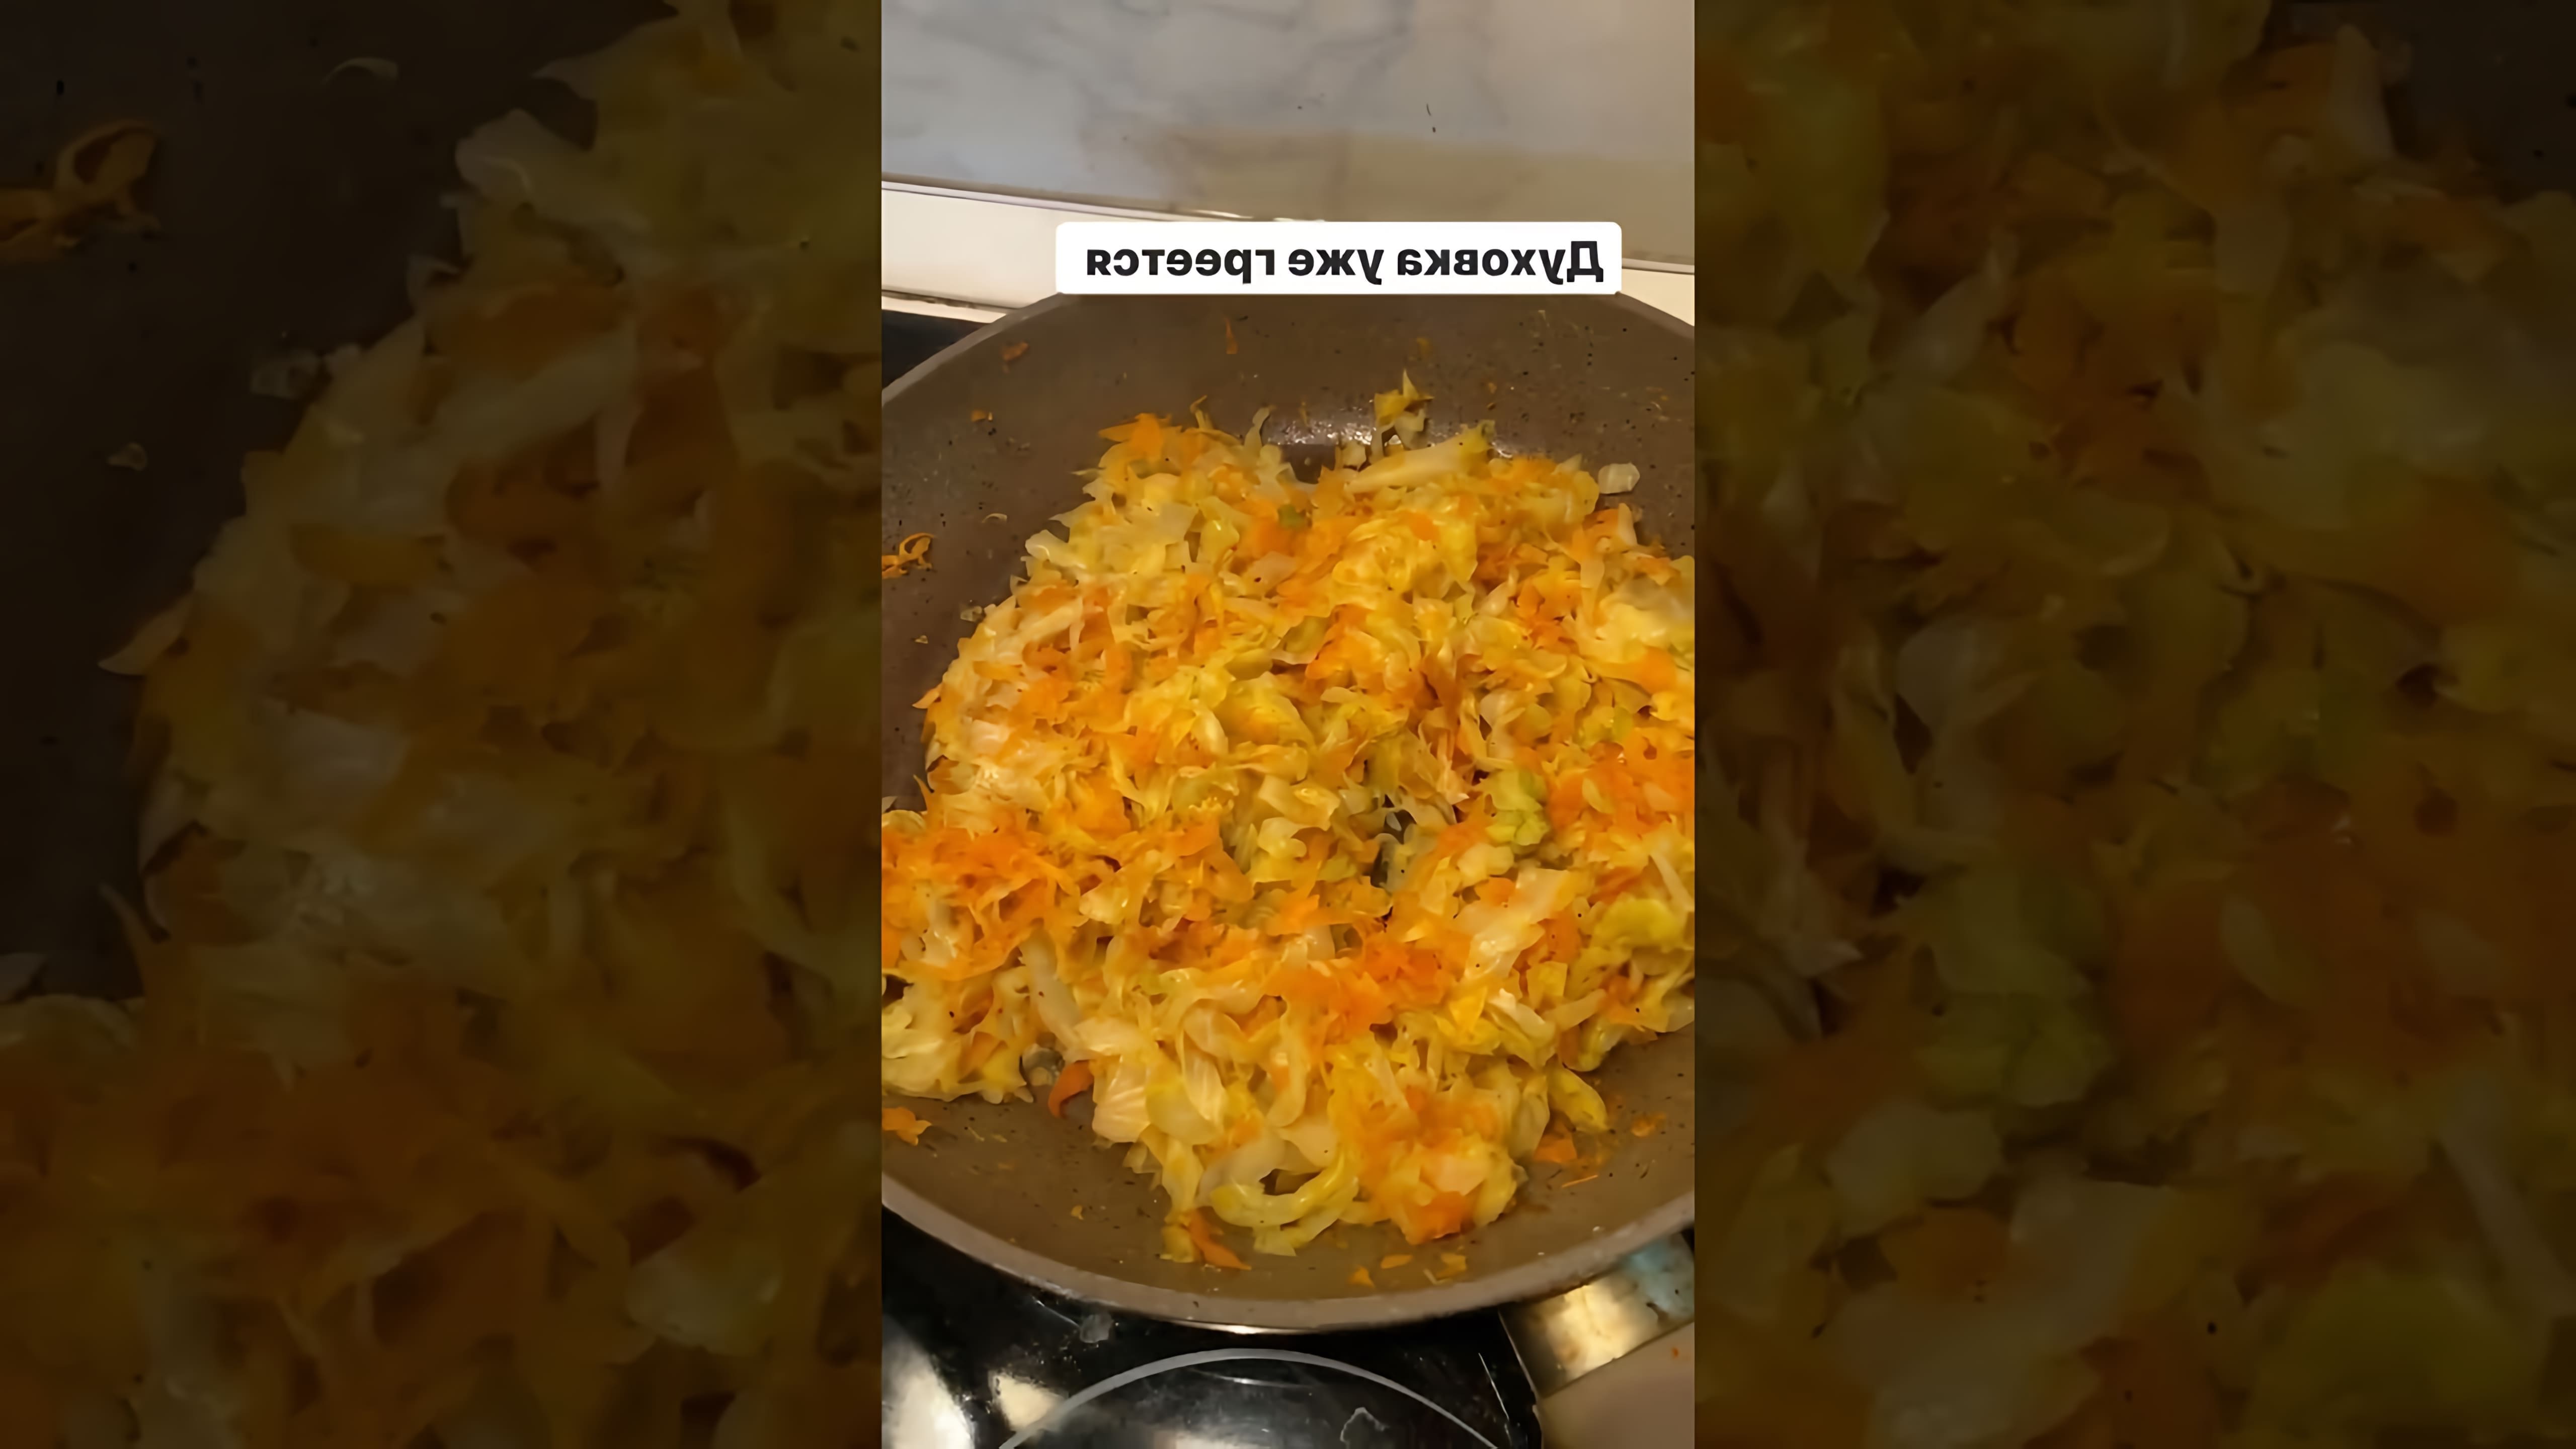 В этом видео демонстрируется рецепт заливного пирога с морковью и капустой без муки, который готовится с использованием геркулеса, овсяных отрубей и других полезных ингредиентов